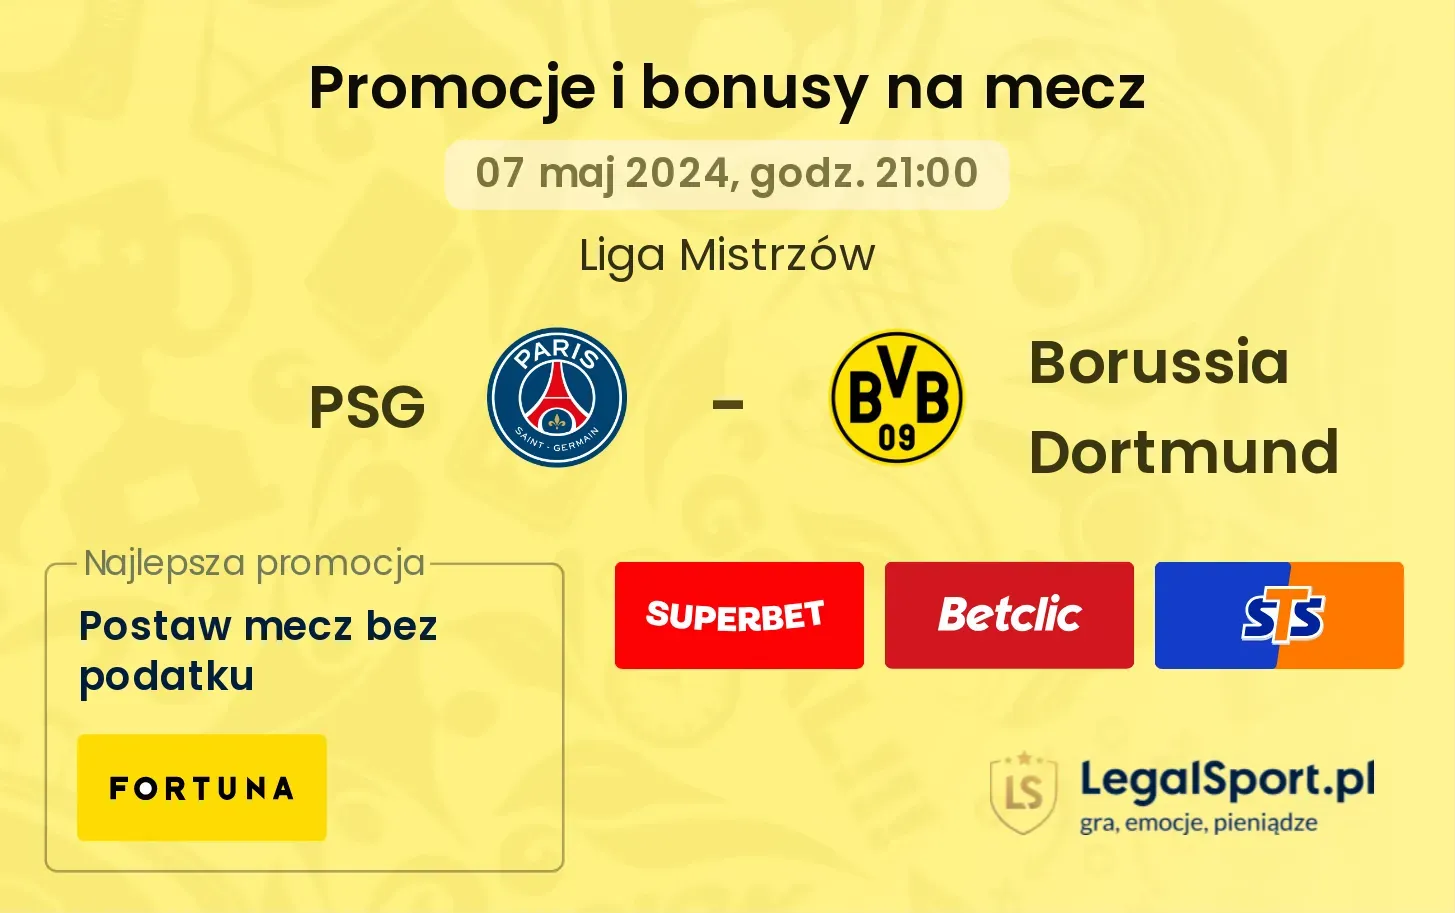 PSG - Borussia Dortmund promocje bonusy na mecz